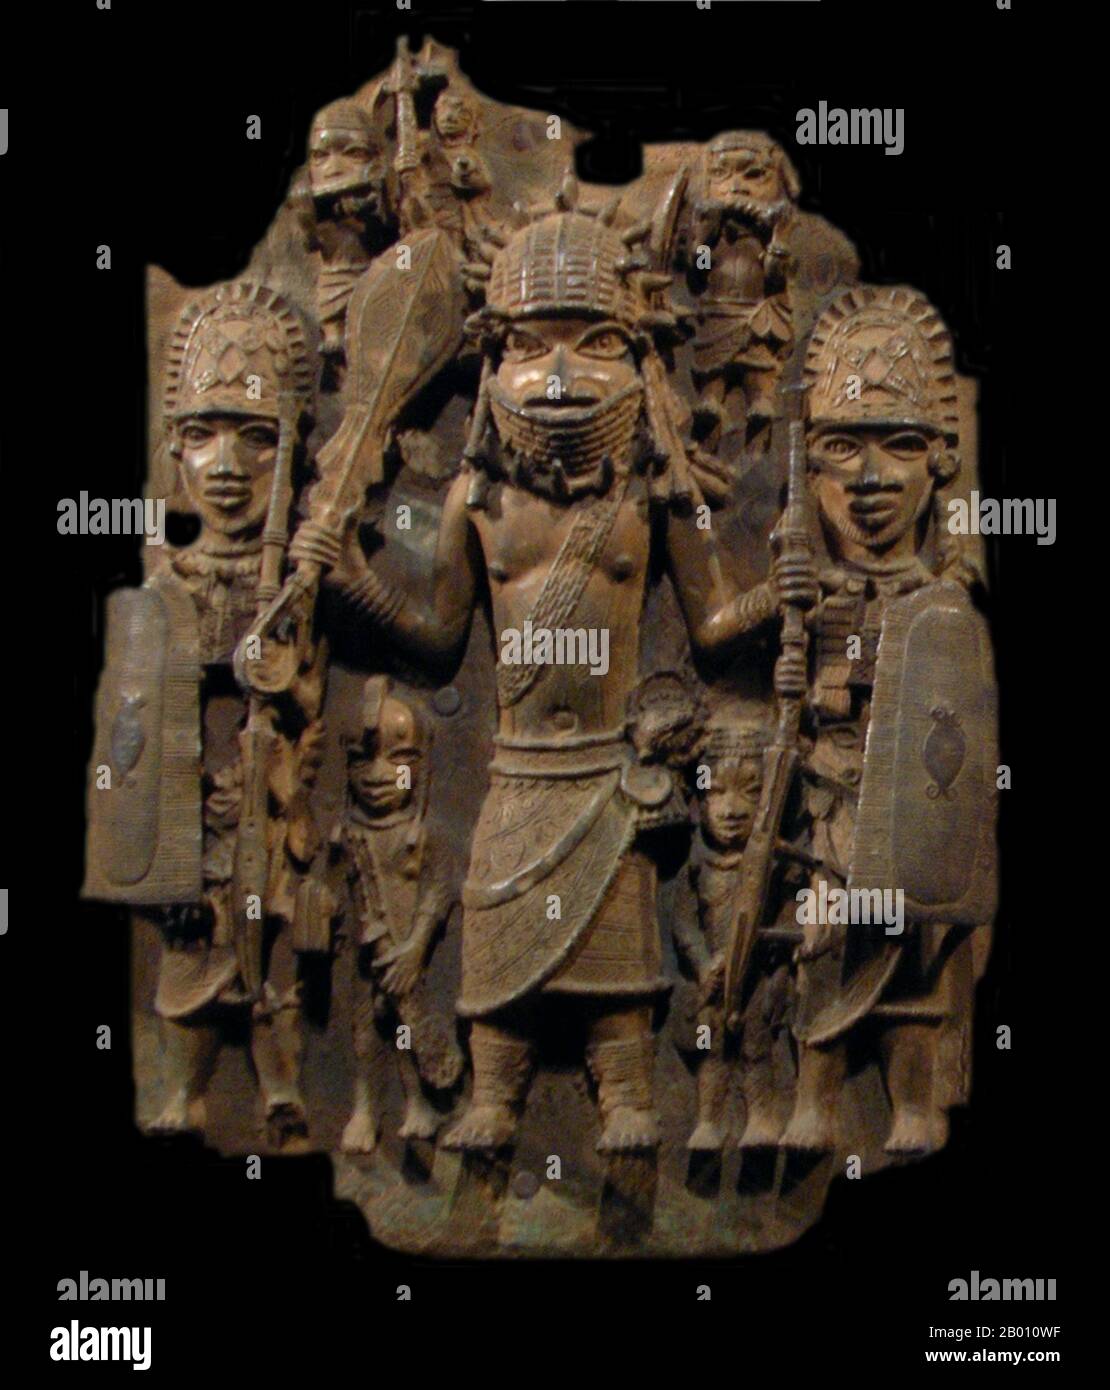 Nigeria: Guerriero con due assistenti, seguaci in background. Lapide di bronzo, Regno del Benin, secoli XVI-XVIII. L'Impero Benino (1440–1897) è stato uno stato africano pre-coloniale in quella che oggi è la Nigeria moderna. Non va confuso con il paese moderno chiamato Benin (e precedentemente chiamato Dahomey). Foto Stock